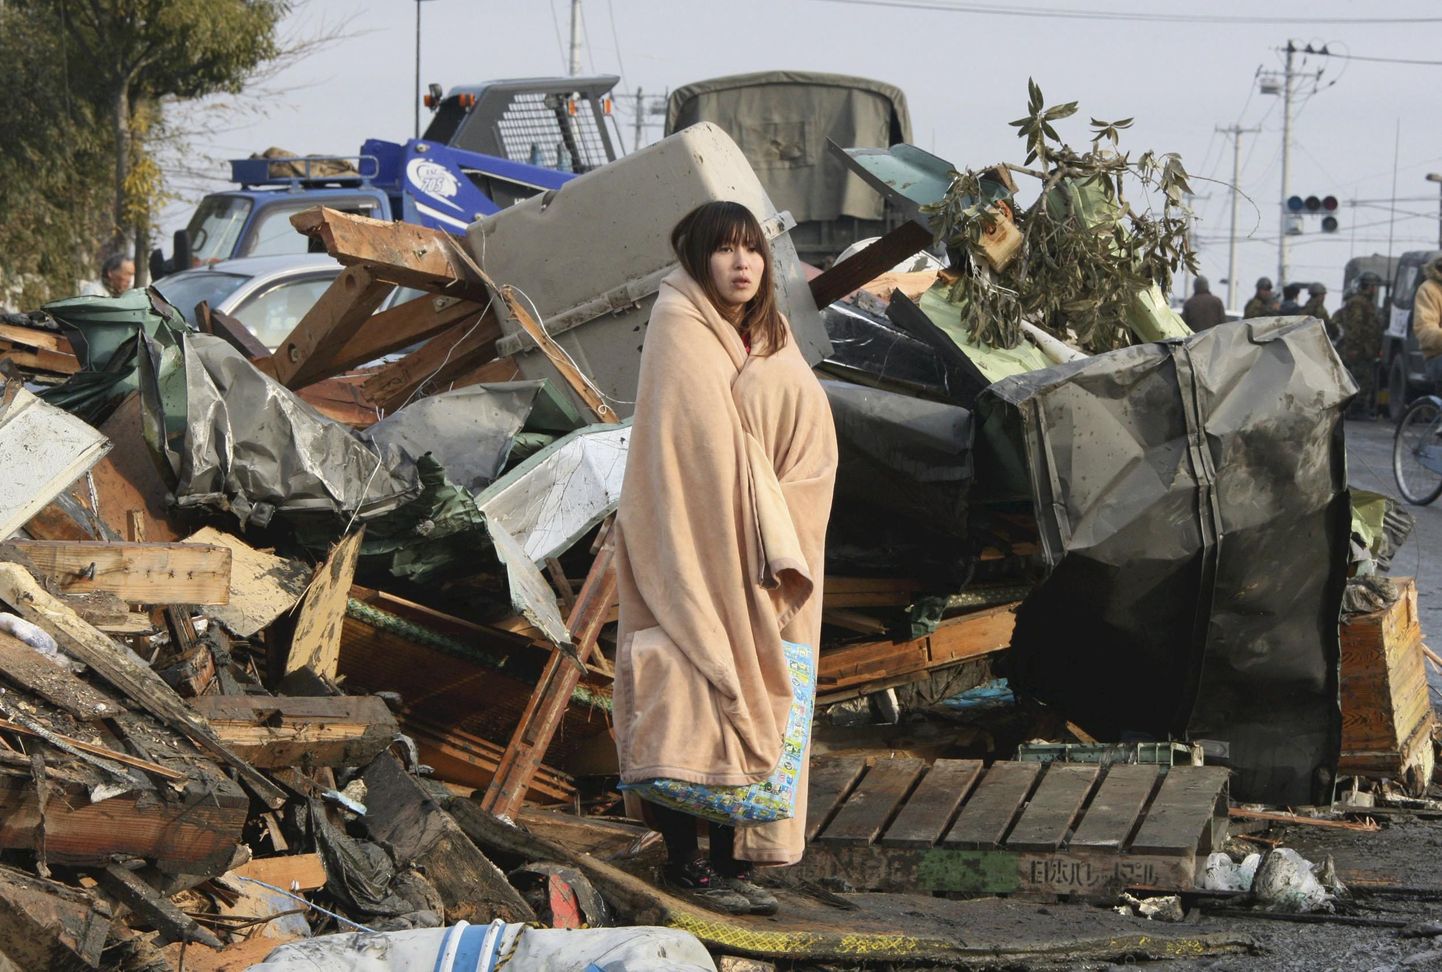 Kuulsaks saanud foto Jaapani 2011. aasta maavärinast. Sellel on näha ema, kes otsis oma last